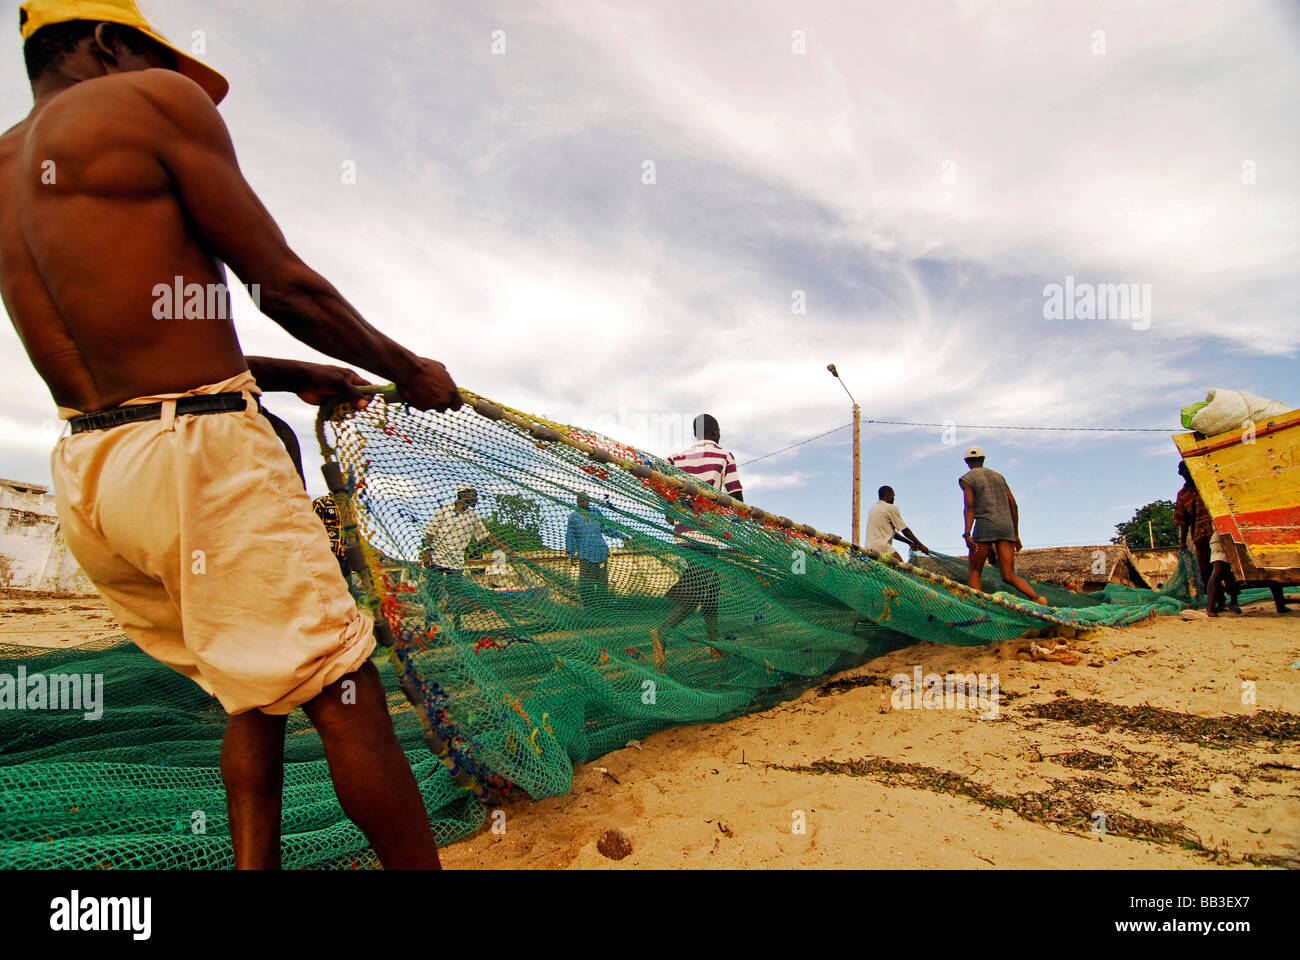 Le MOZAMBIQUE, l'Ilha de Mozambique. Groupe de pêcheurs solides barechest debout dans le sable, tirant un filet de pêche vert Banque D'Images